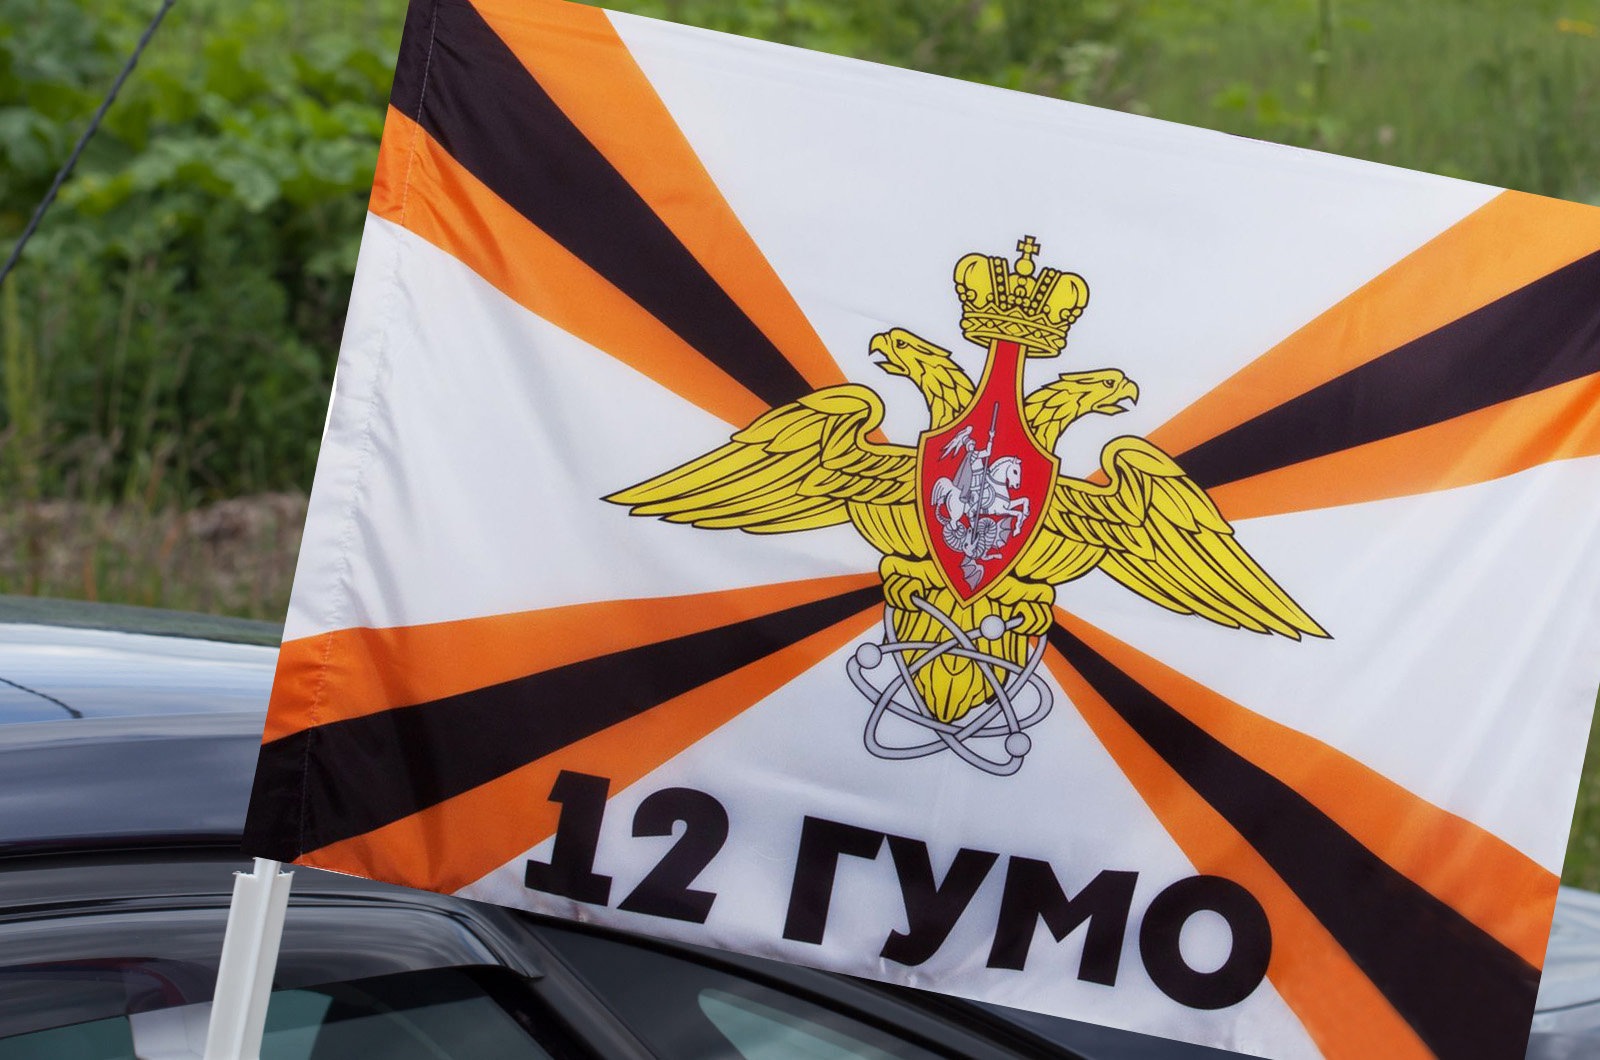 Заказать автомобильный флаг 12-го ГУ Министерства обороны России по демократической цене